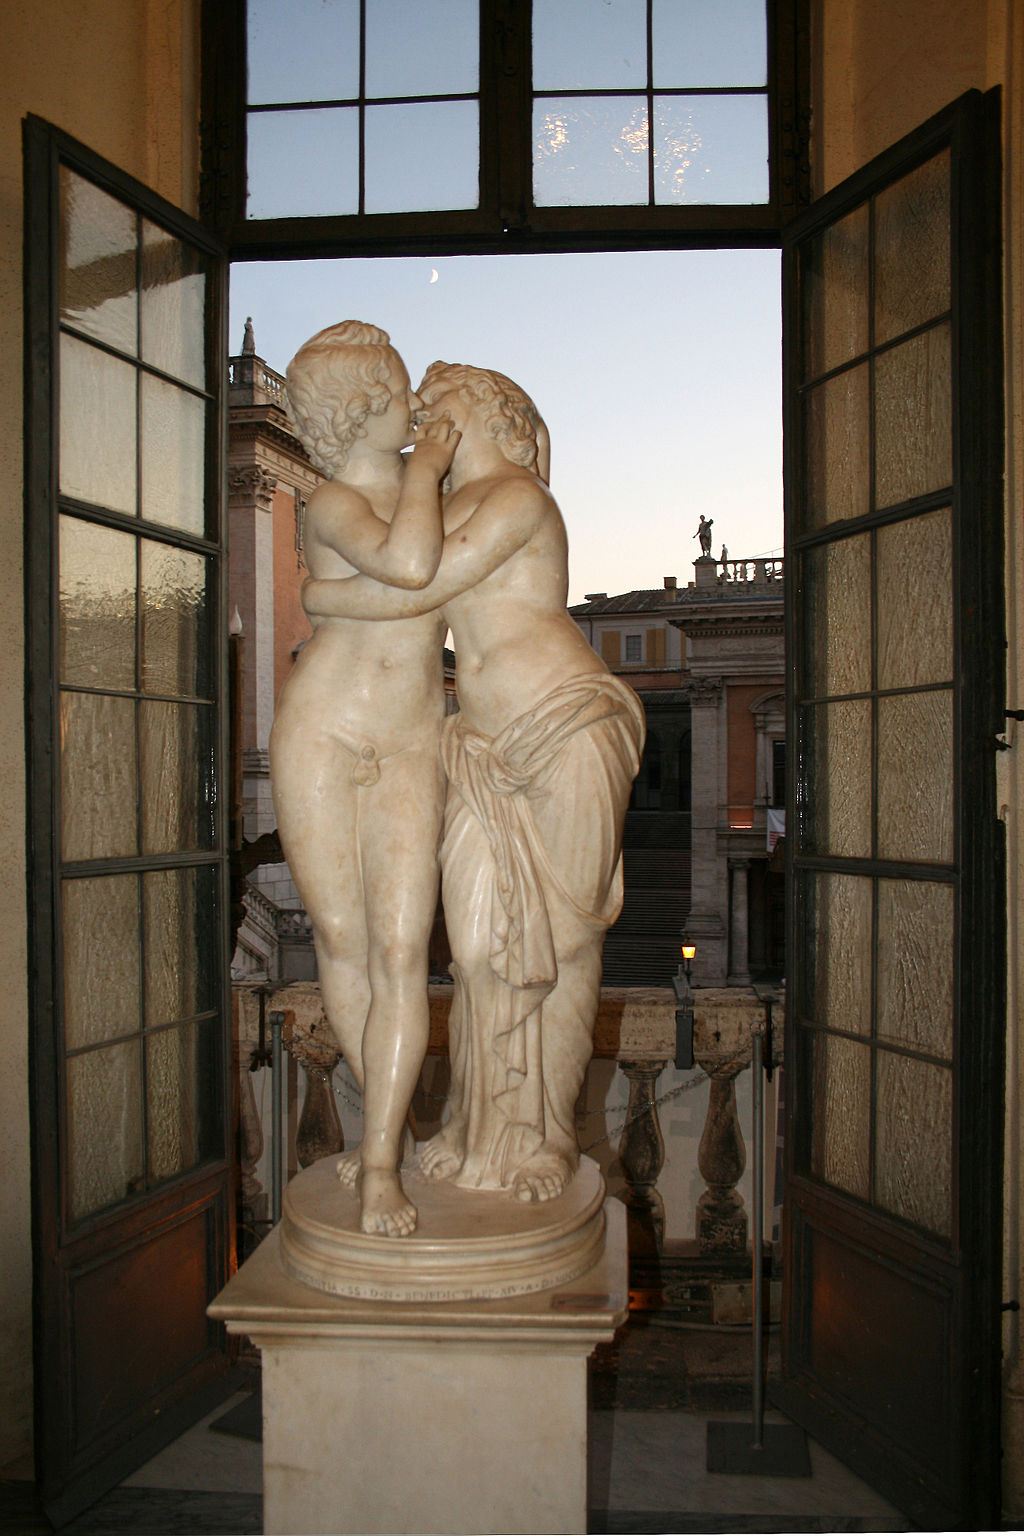 Capitoline Museum Private Tour